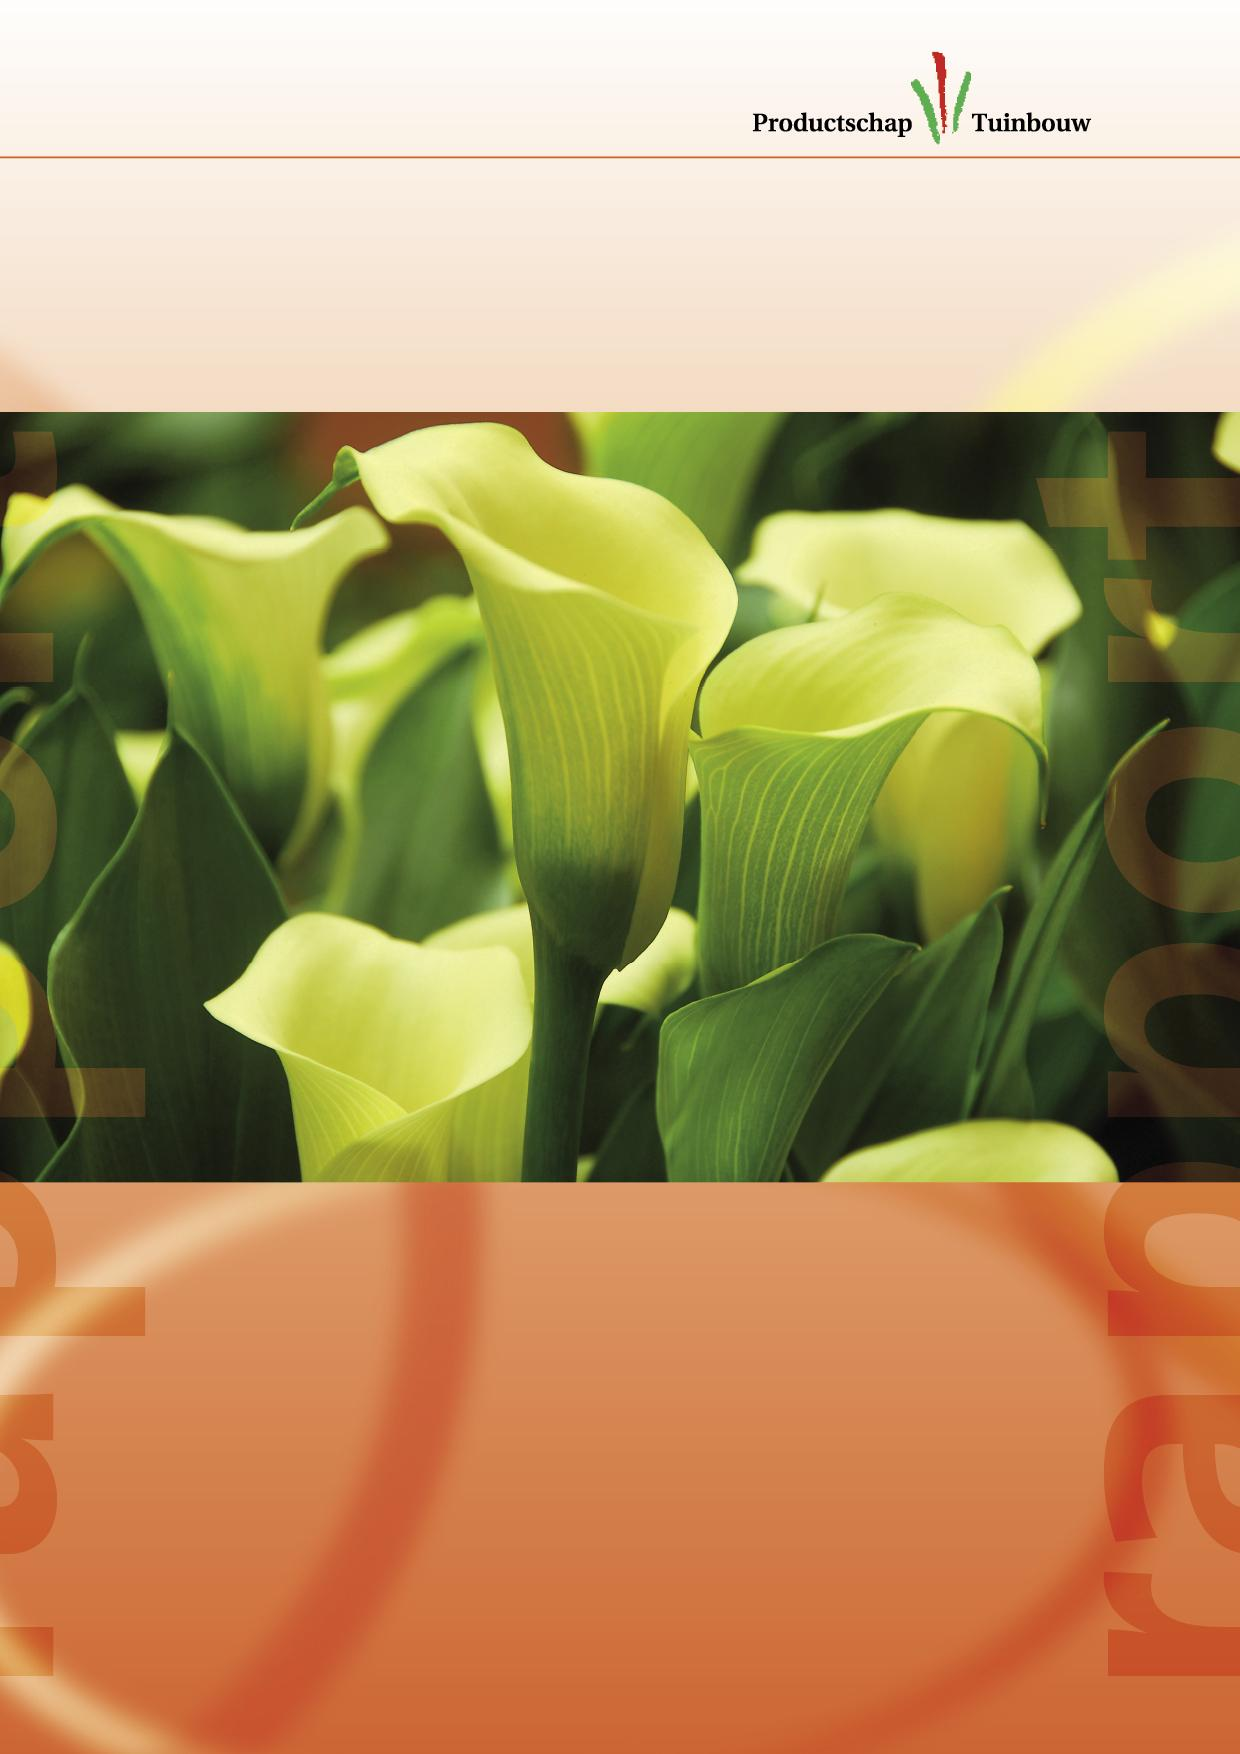 Groeipotentie voor Zantedeschia als tuinplant Onderzoek onder bloemisten en consumenten in